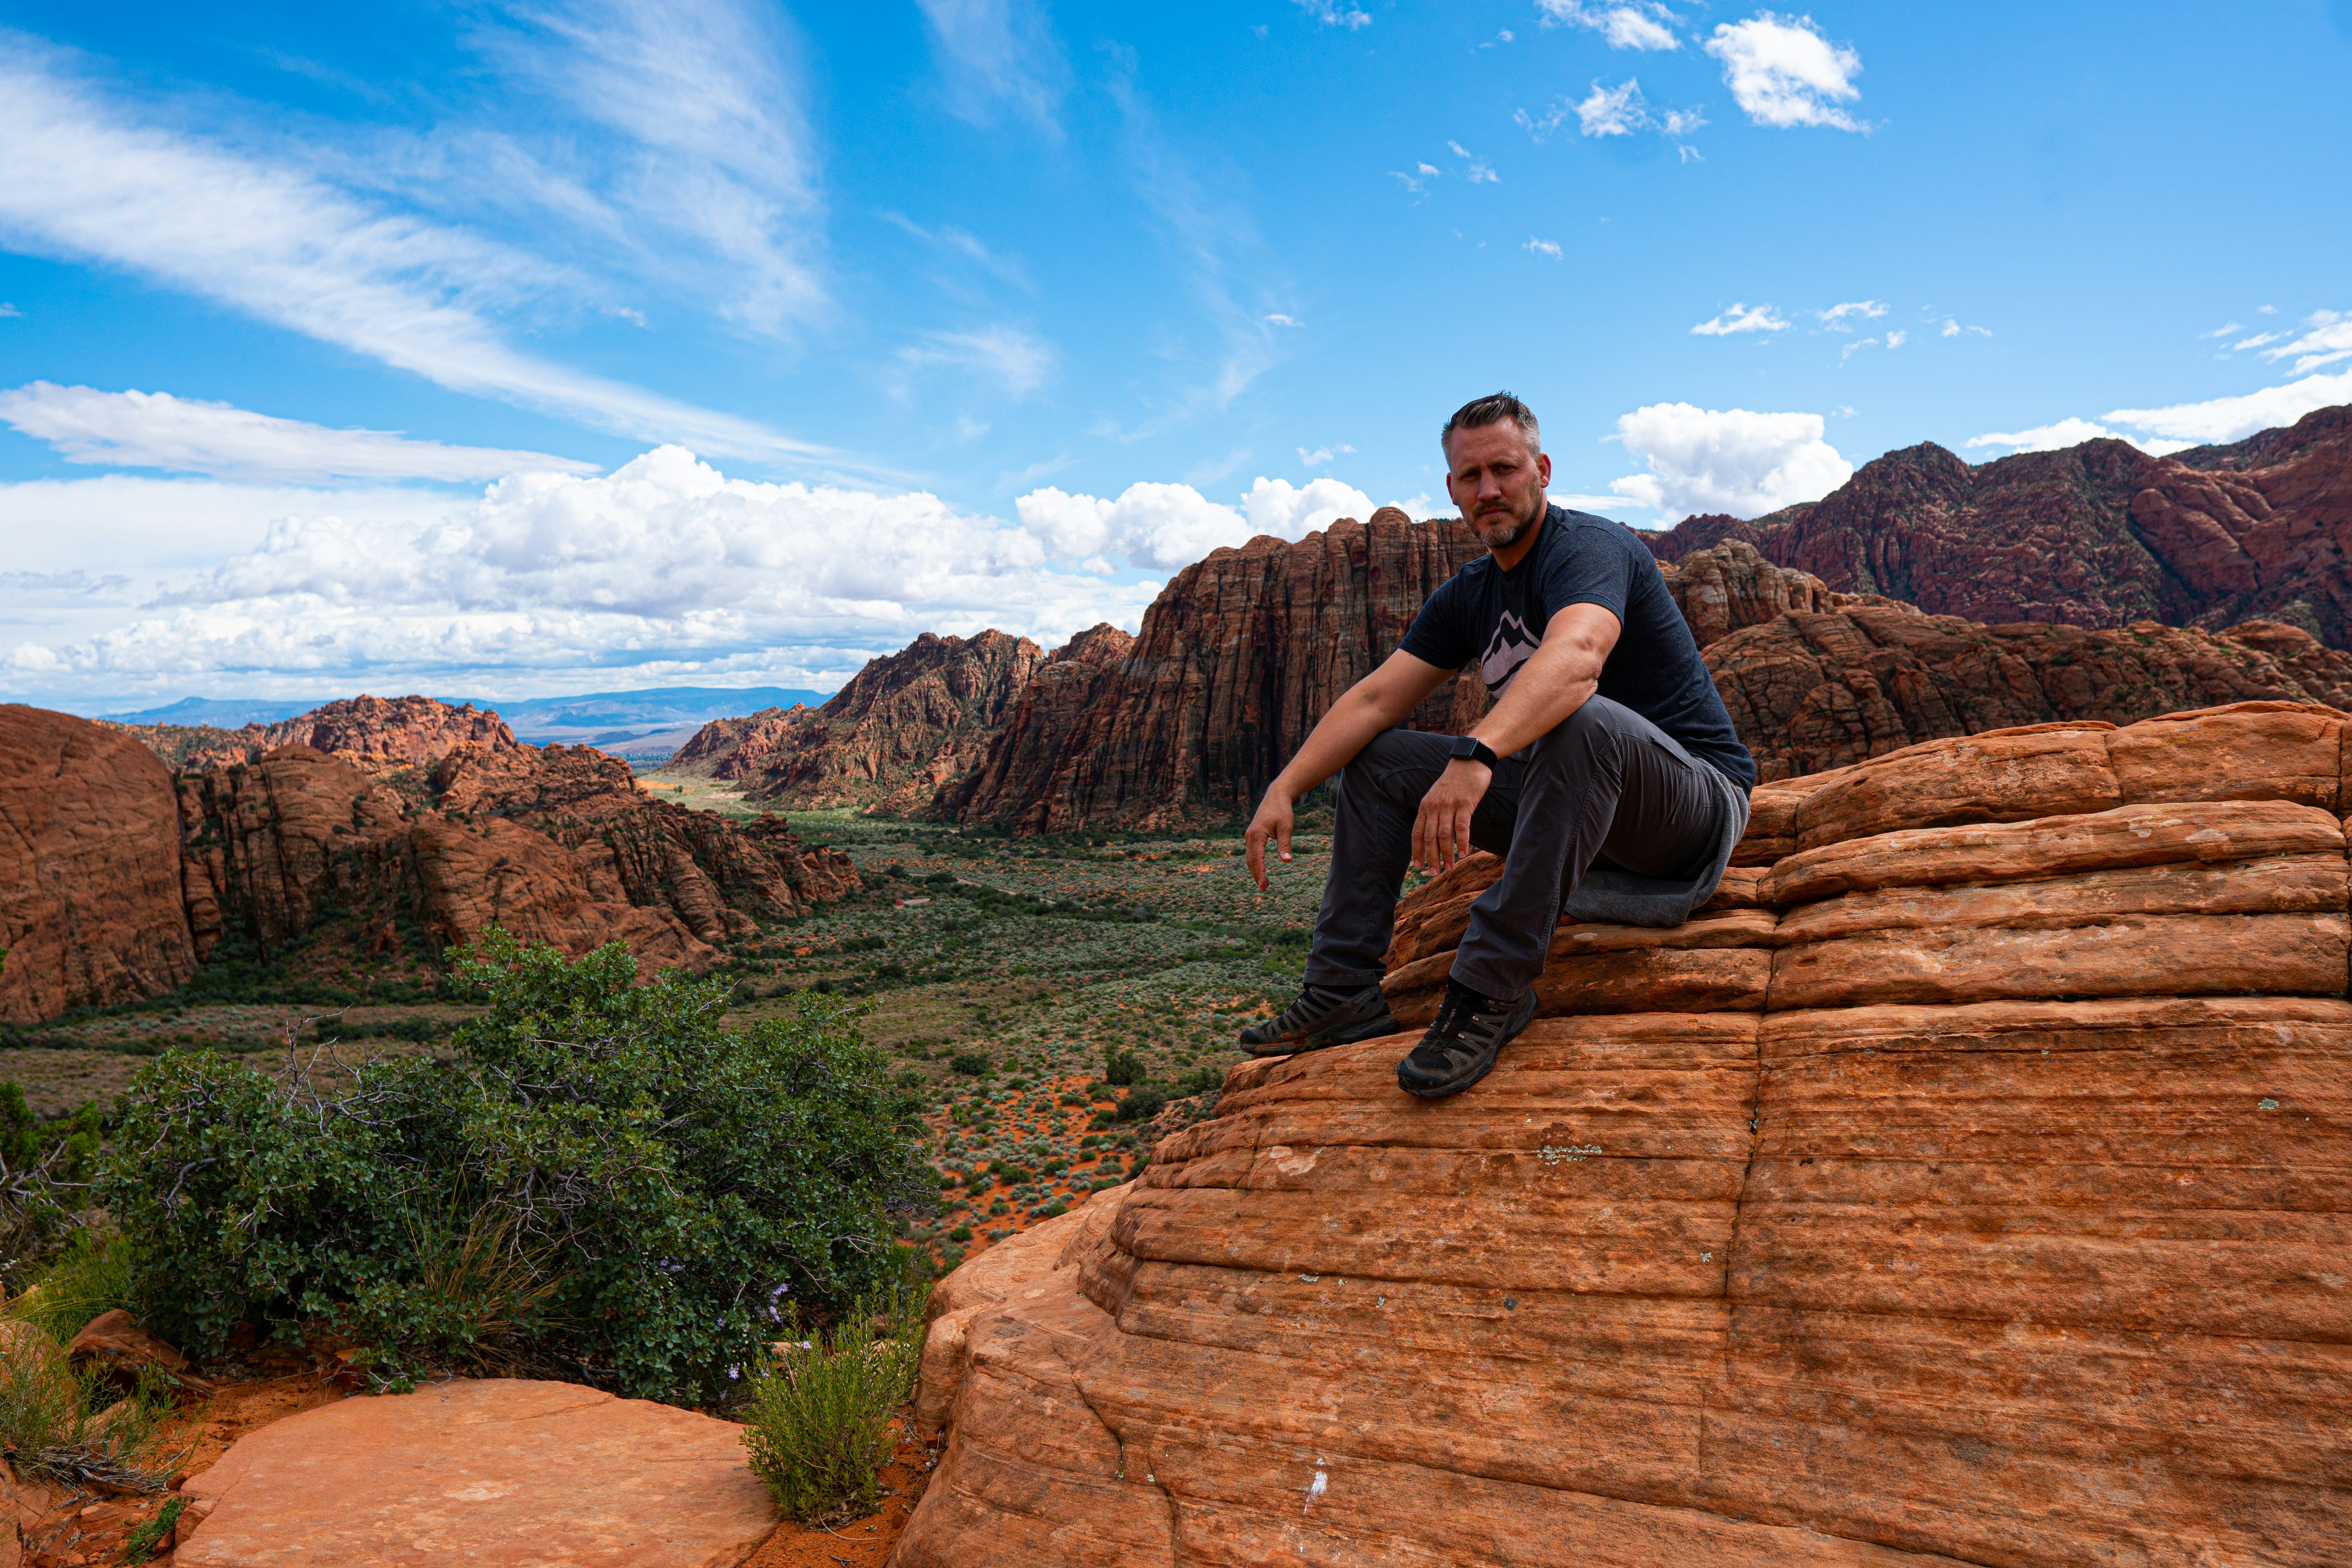 man wearing black shirt sitting on brown rock formation